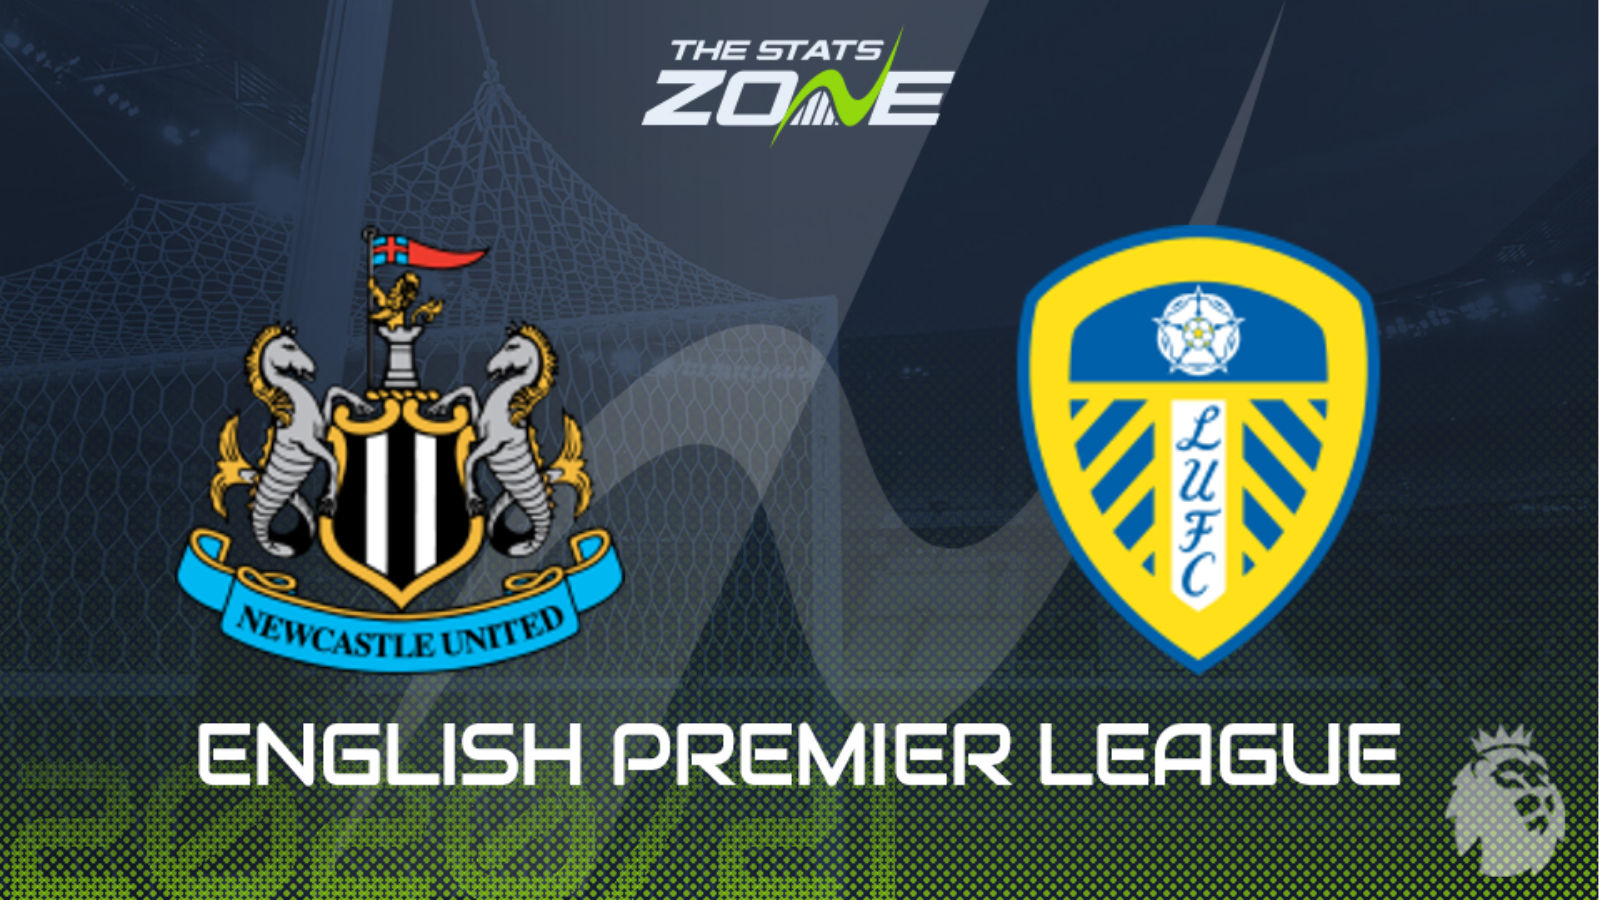 2020-21 Premier League - Newcastle vs Leeds Utd Preview & Prediction ...